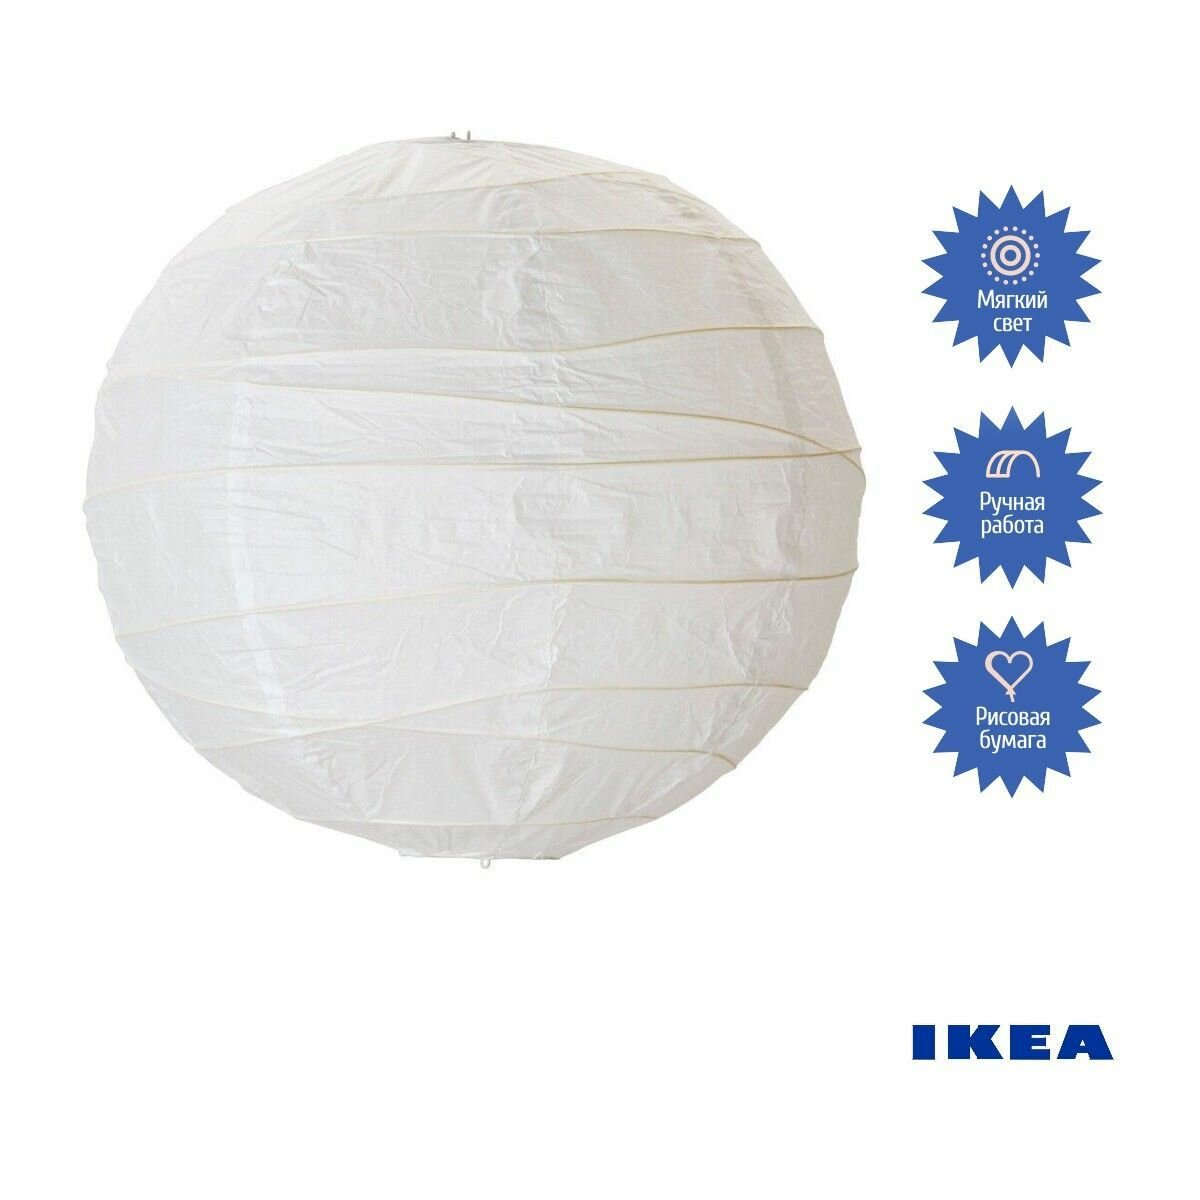 Абажур IKEA REGOLIT ( Икея Реголит) белый 45x45x45см